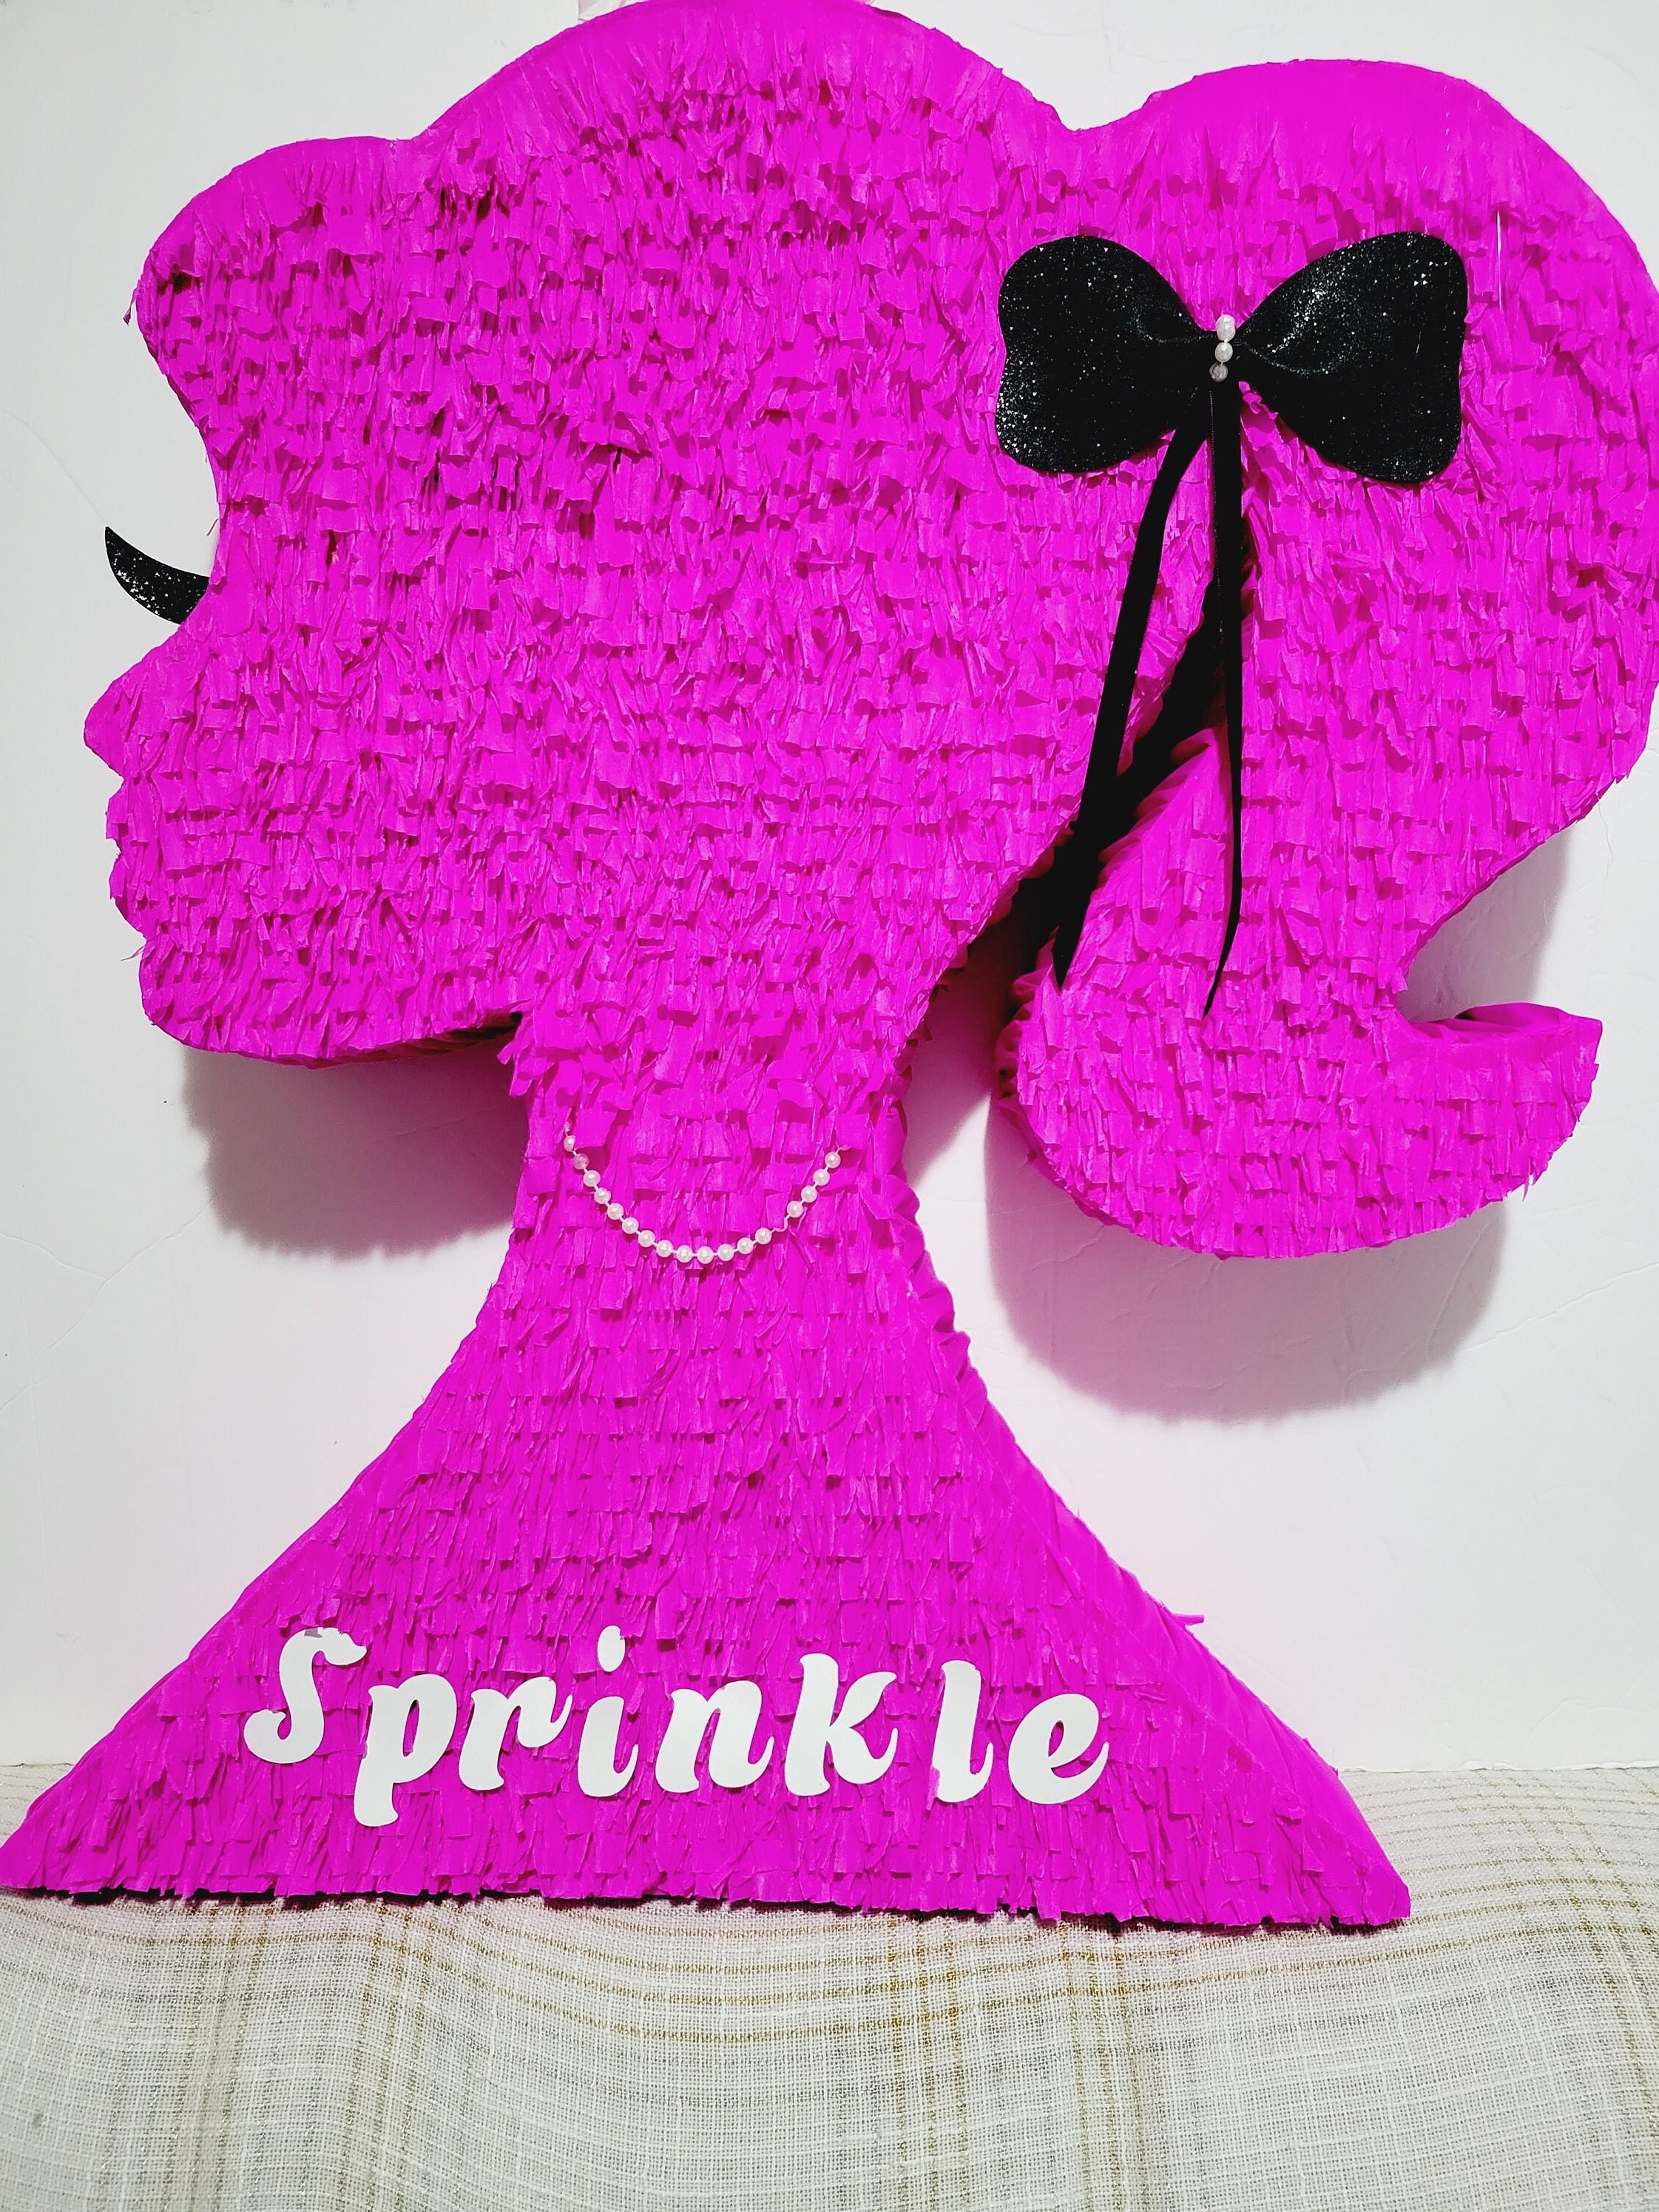 Detalles Sanjur on X: Piñata Barbie #party #cebración #piñata #hbday   / X